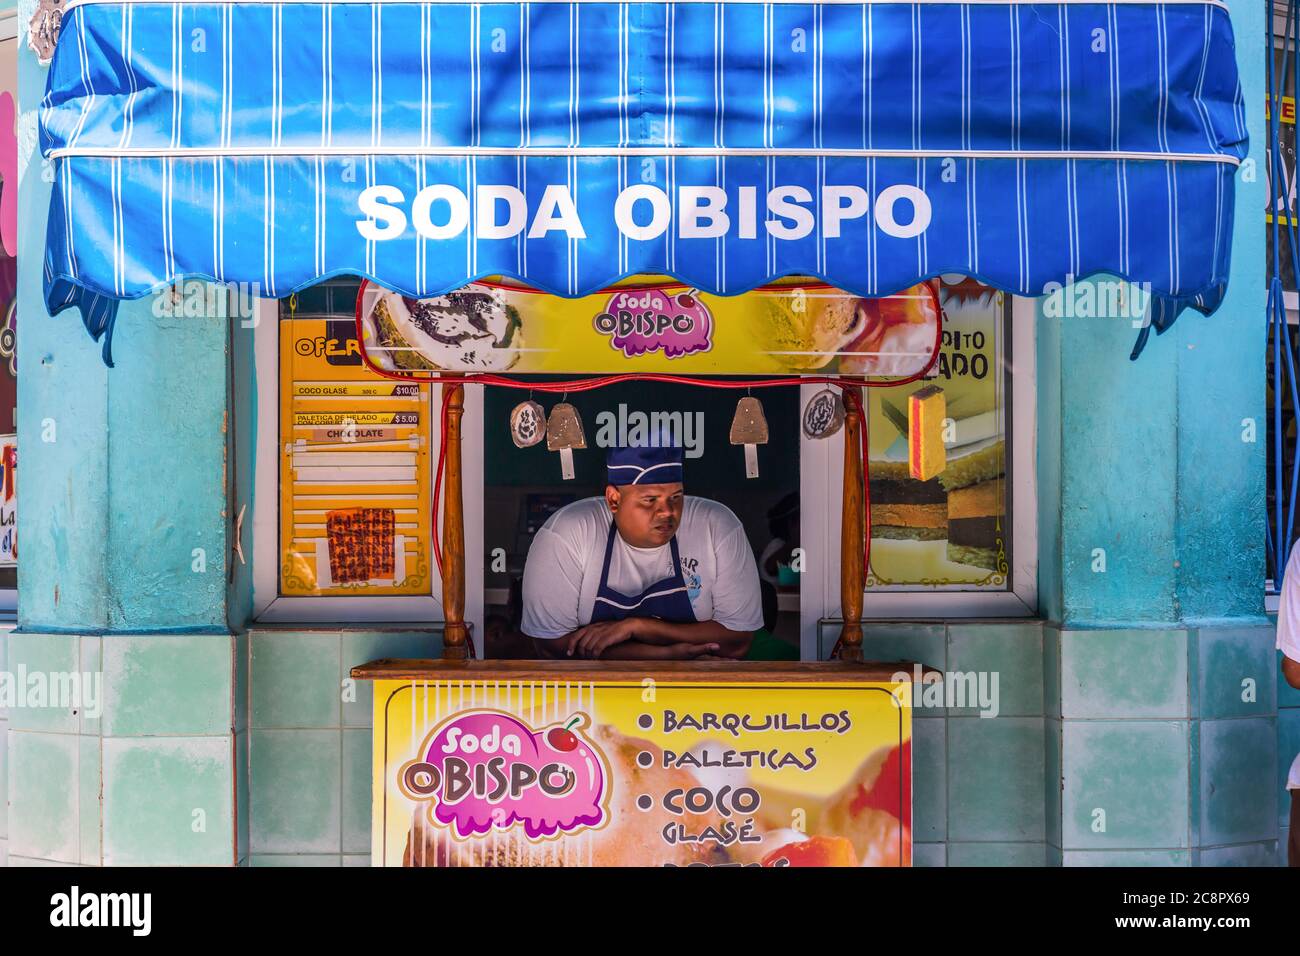 L'Avana / Cuba - 04.15.2015: Un uomo cubano che vende gelati in un negozio, pensando a pensieri profondi Foto Stock